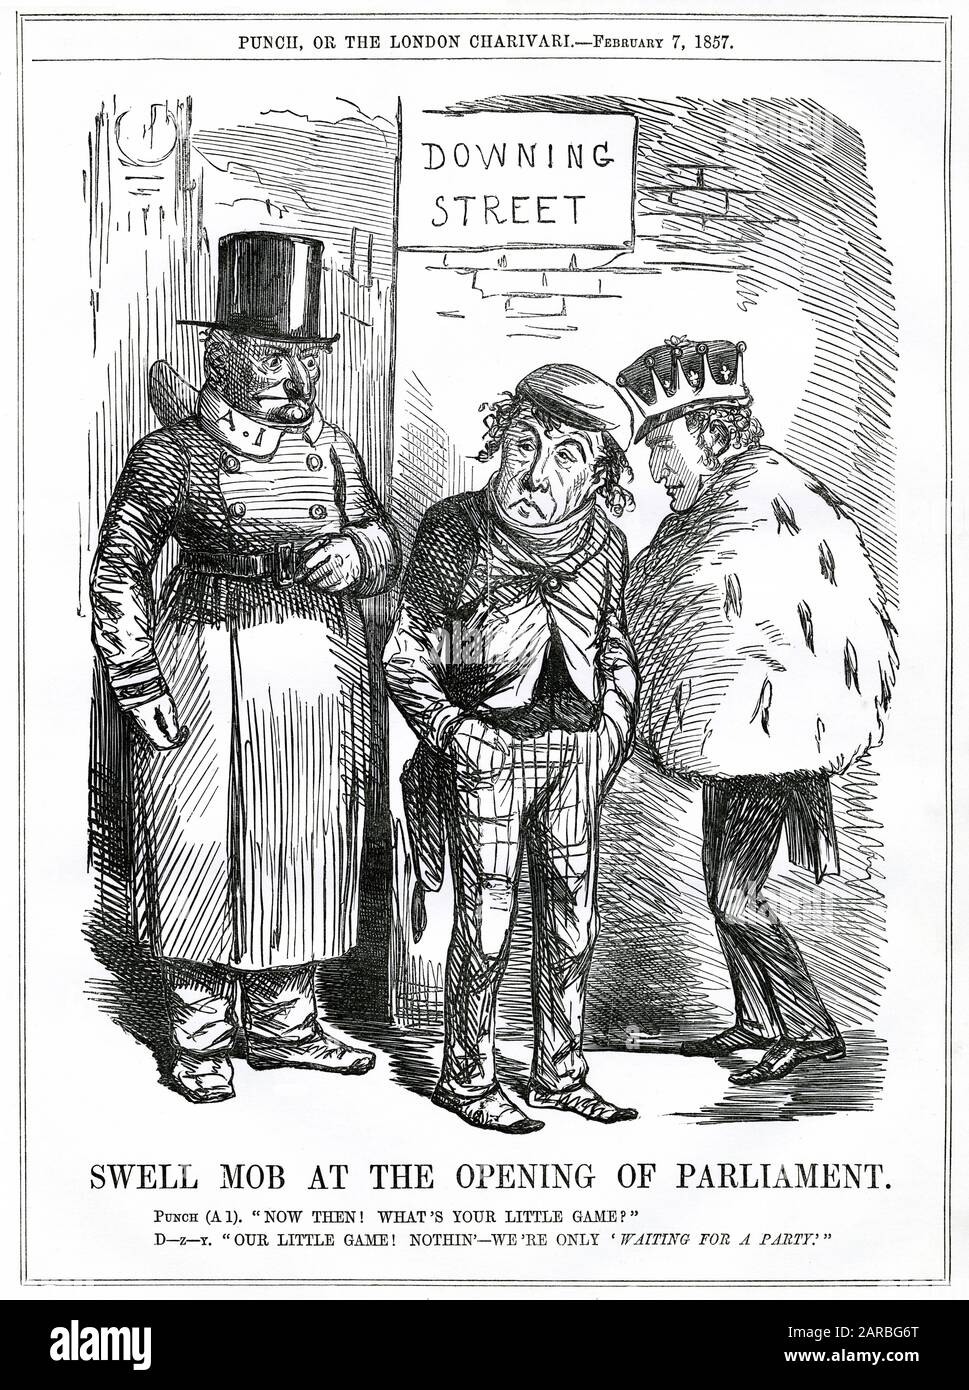 Zeichentrickfilm, Mob bei der Eröffnung des Parlaments -- satirische Stellungnahme zu konservativen Abgeordneten wie Benjamin Disraeli und Lord Derby, "Warten auf eine Partei", mit anderen Worten, in der Hoffnung, Mitglieder der Peelite-Fraktion zu gewinnen, um ihre Ränge zu stärken. Ihr Rivale, Lord Palmerston, hatte gerade eine Parlamentswahl für die Whig-Partei gewonnen. Stockfoto